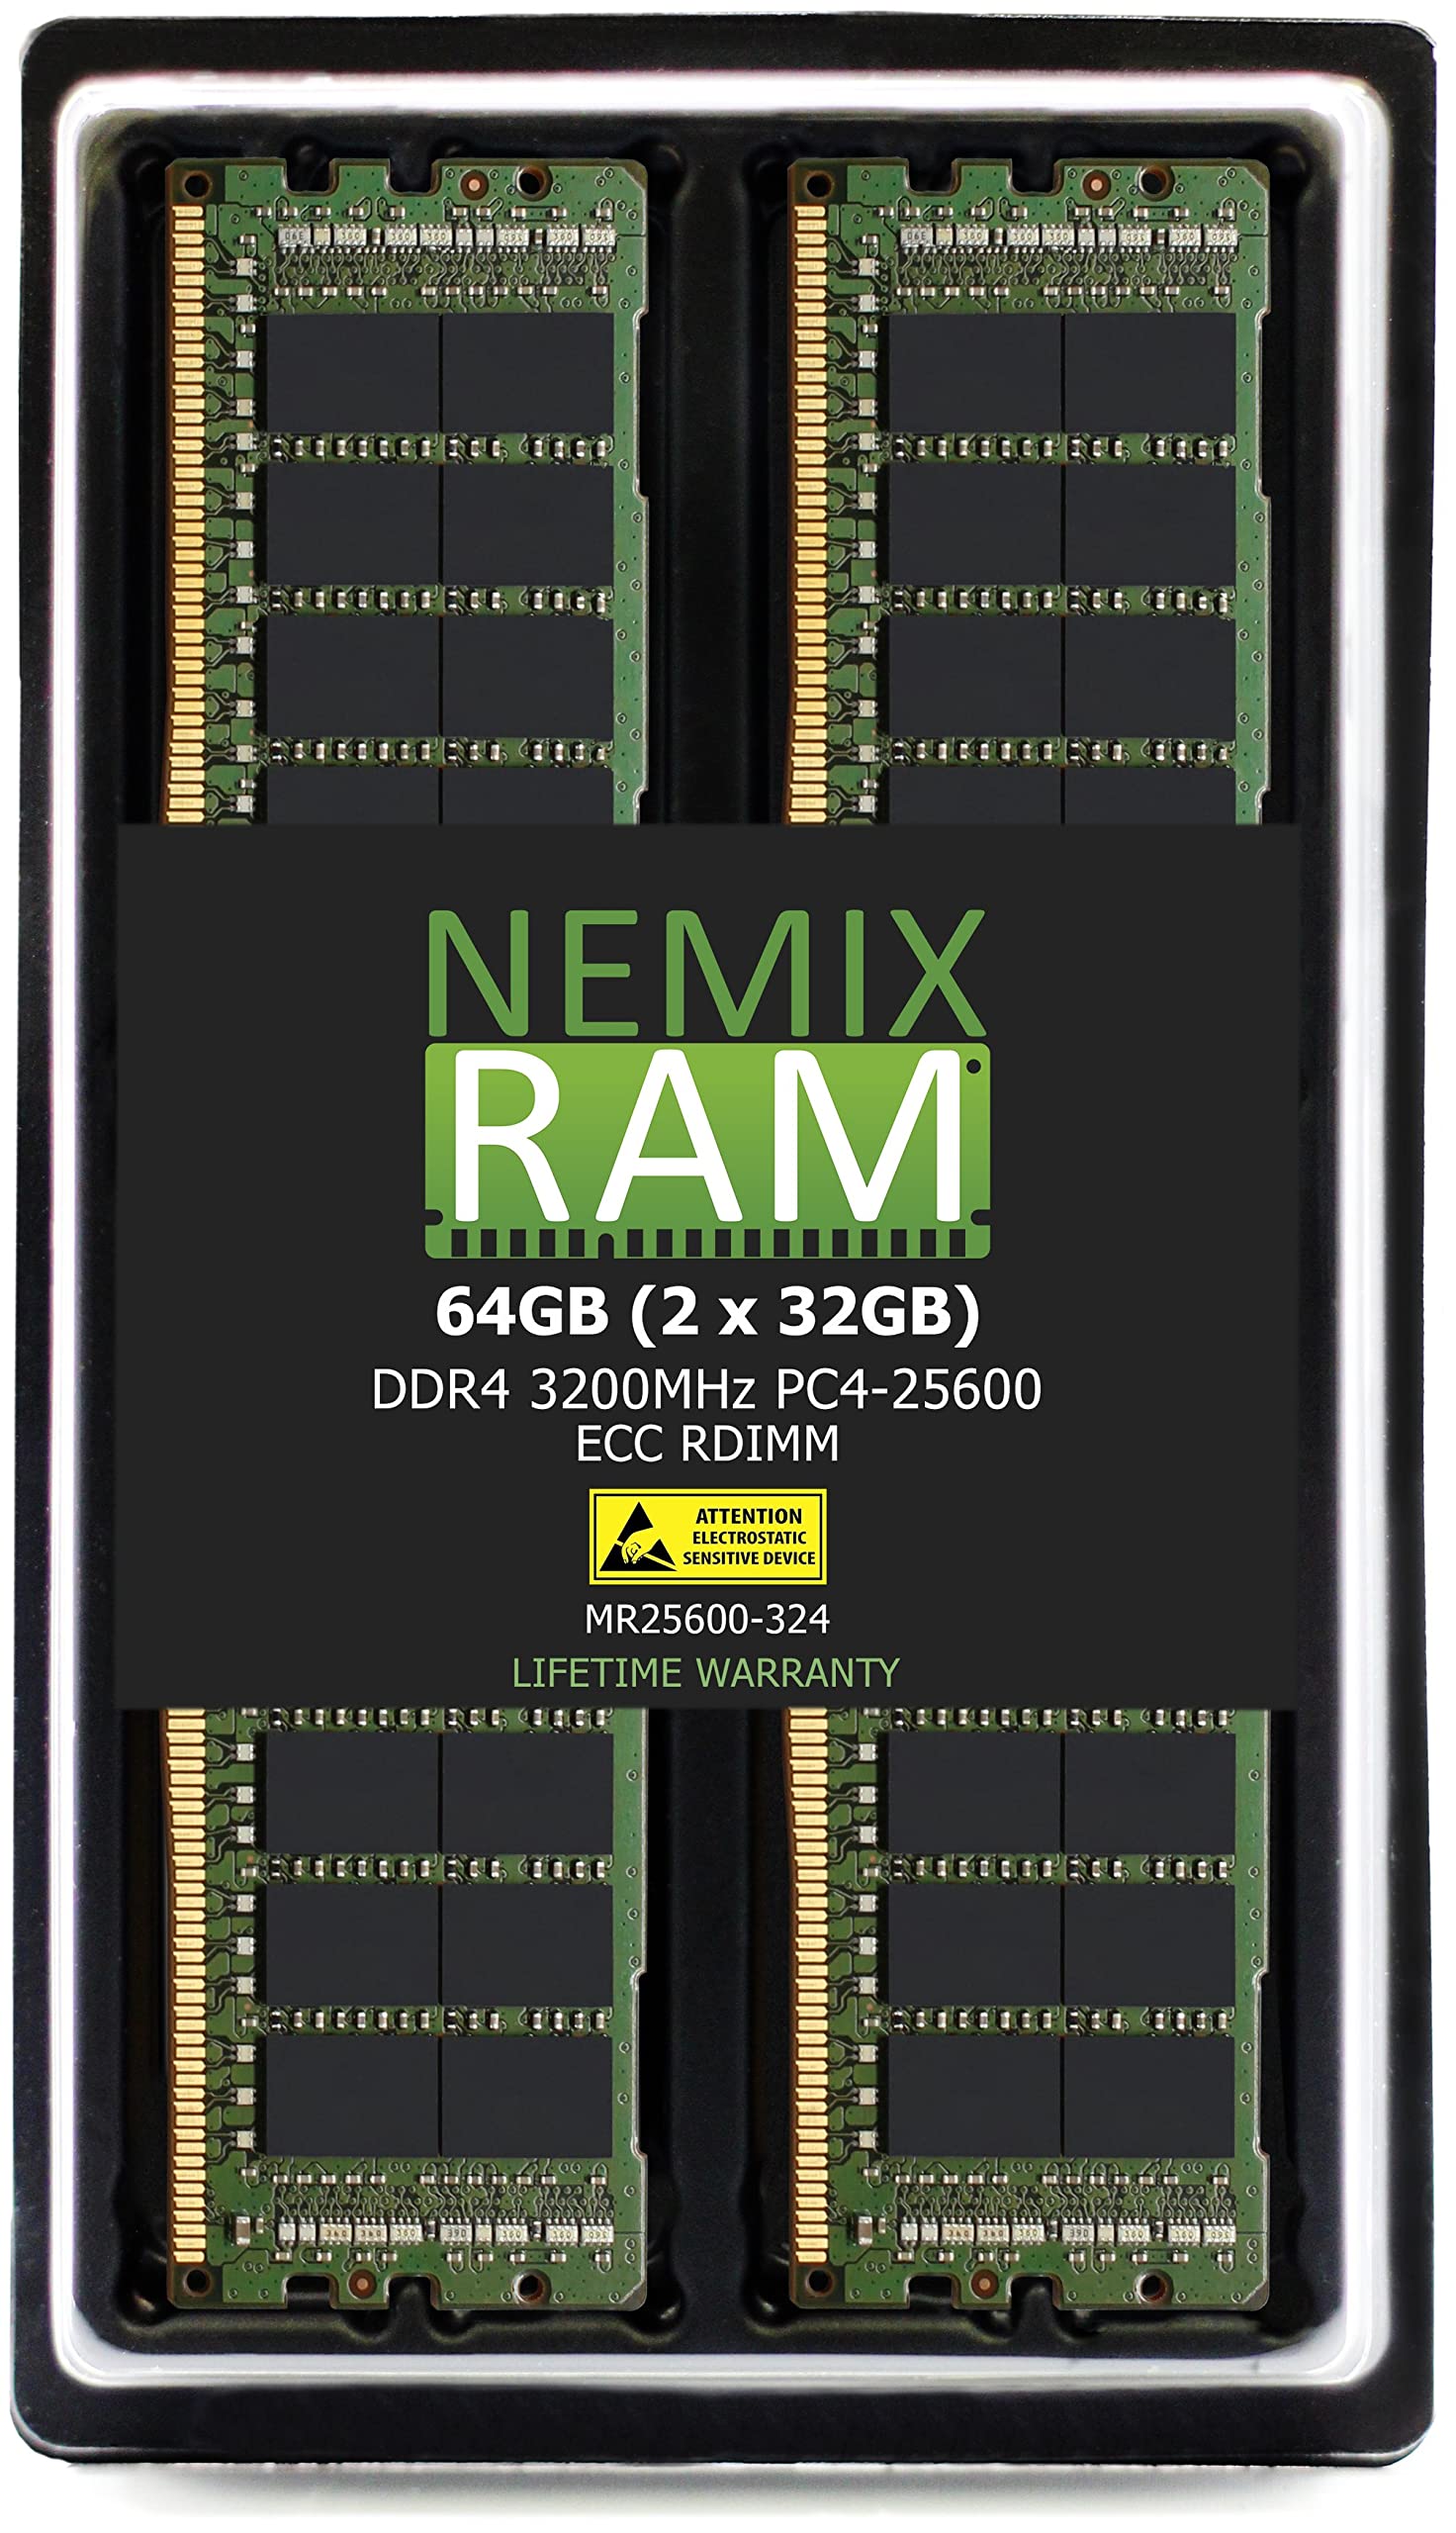 NEMIX RAM 64GB 2X32GB DDR4-3200 PC4-25600 ECC RDIMM レジスタードサーバーメモリアップグレード Dell EMC P